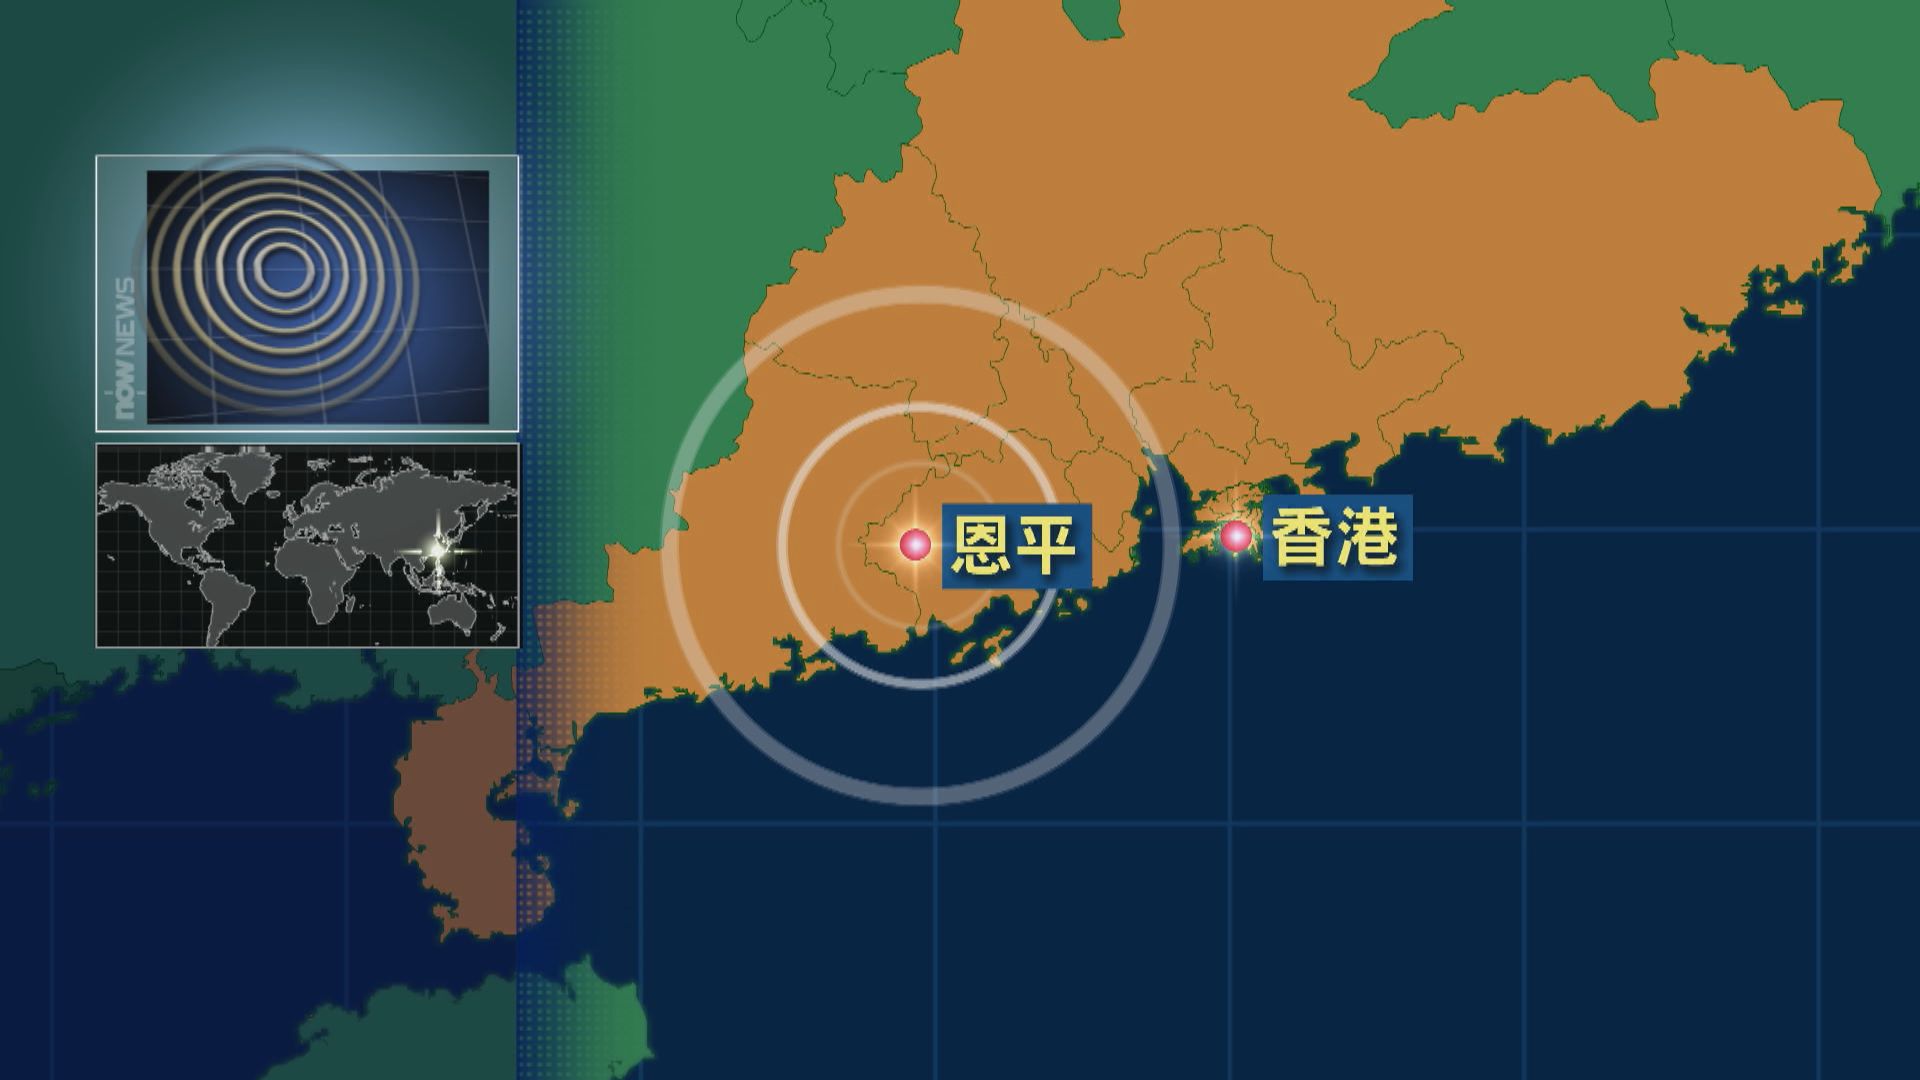 廣東恩平4.3級地震 港天文台接逾百名市民報告